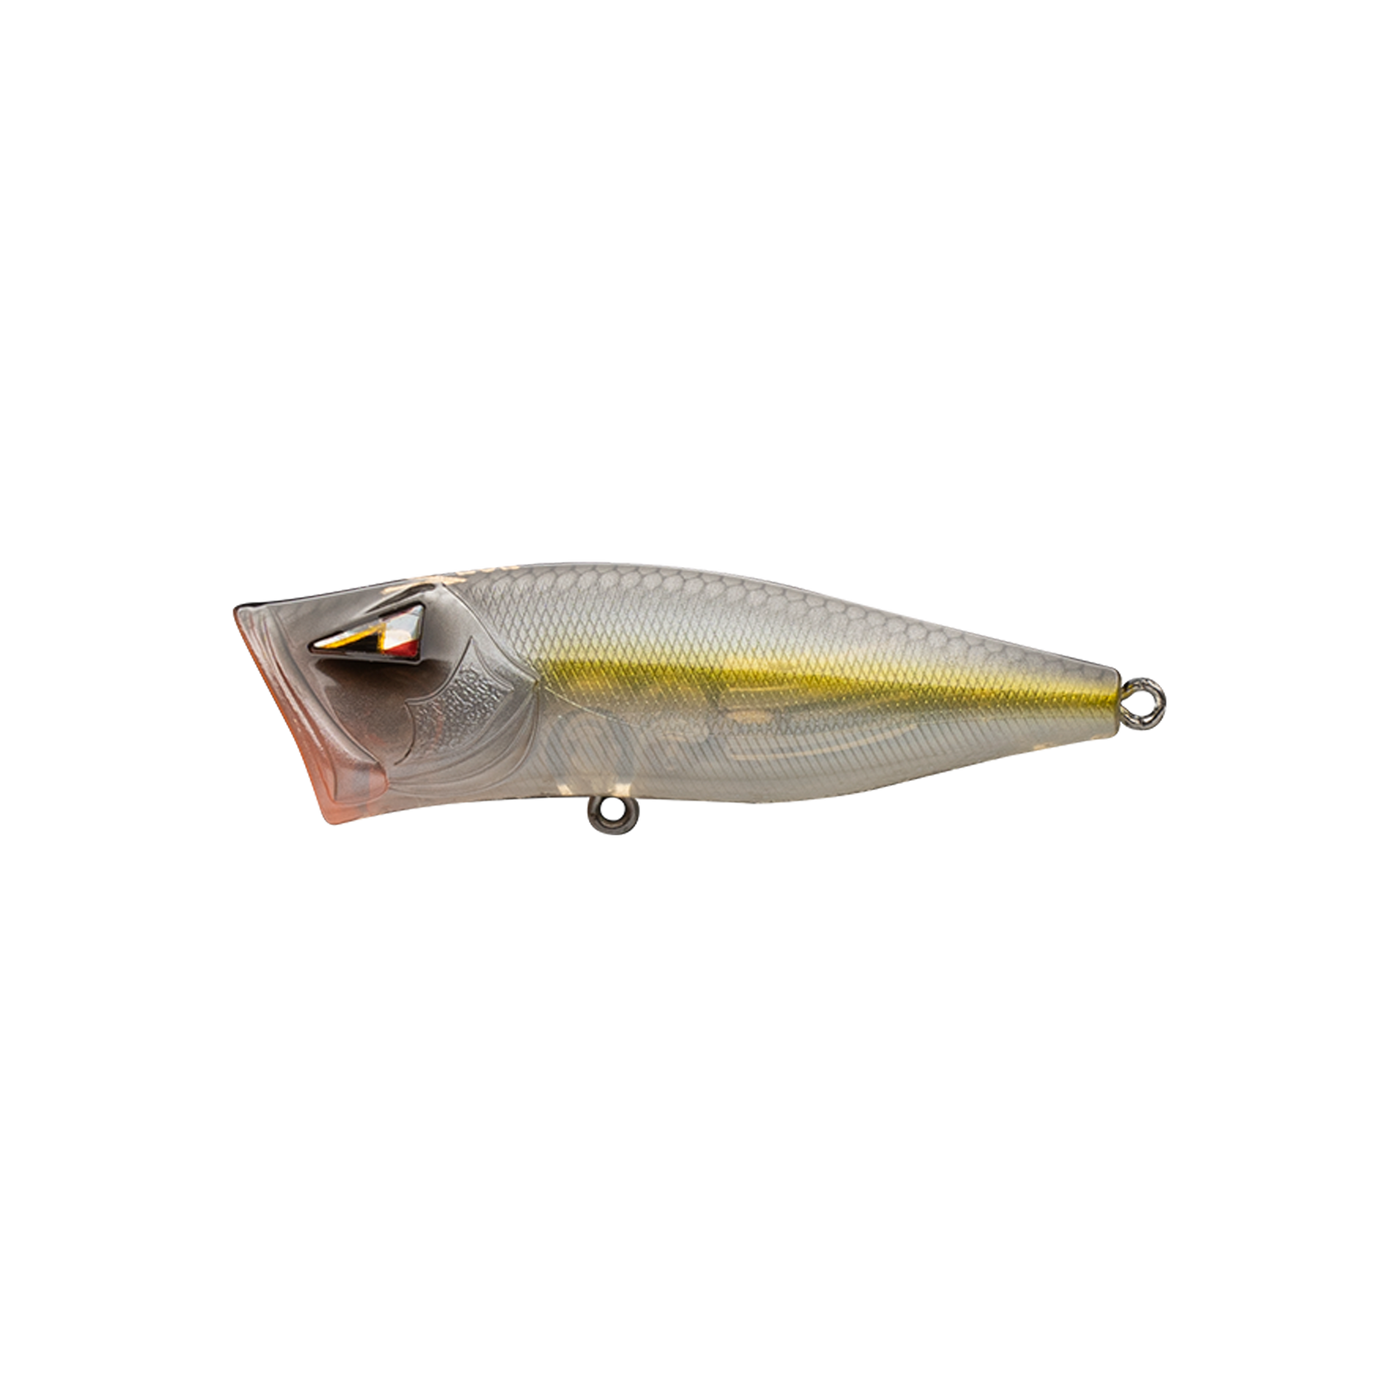 Metal UV Printed Jig Spoon 3D Printed Baits For Saltwater Fishing